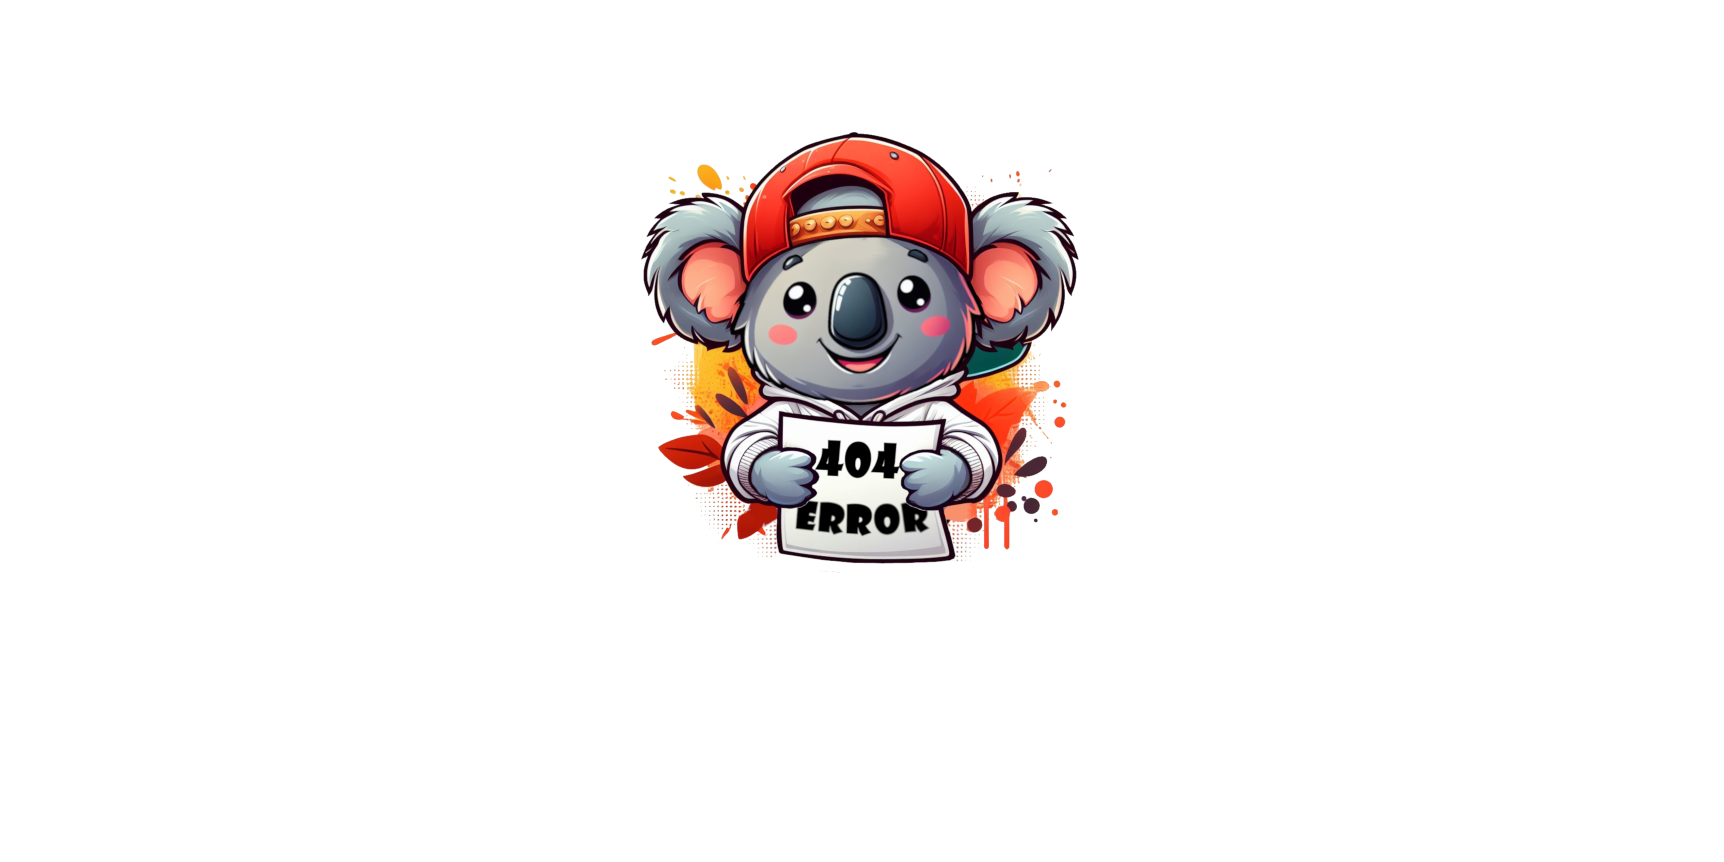 404 Error Koala Wakkatoa